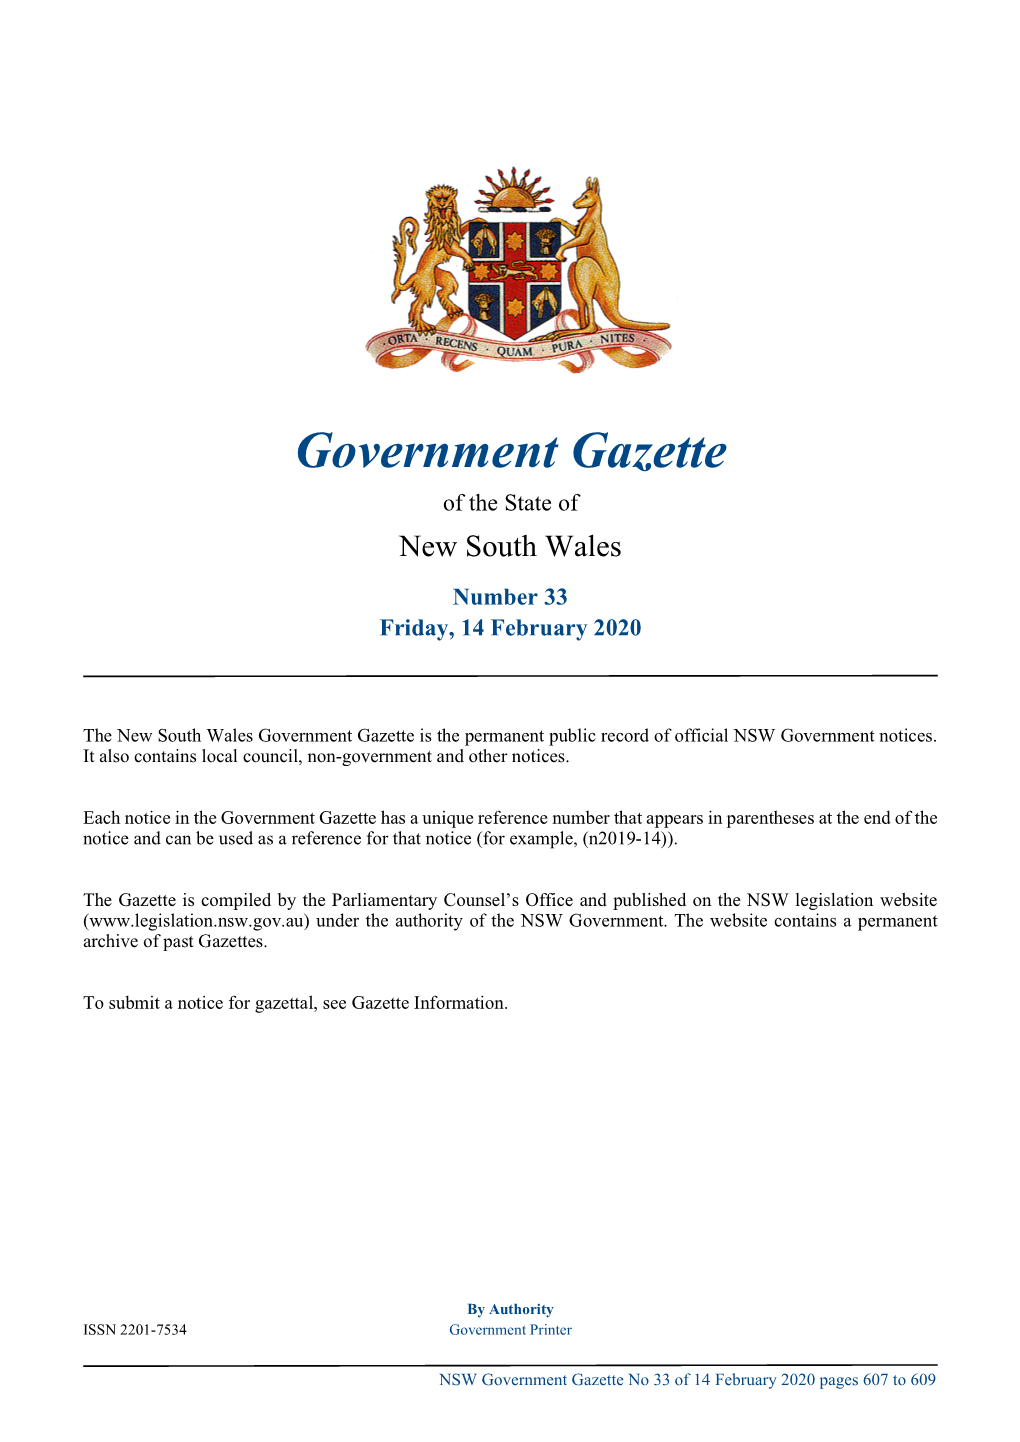 Government Gazette No 33 of Friday 14 February 2020